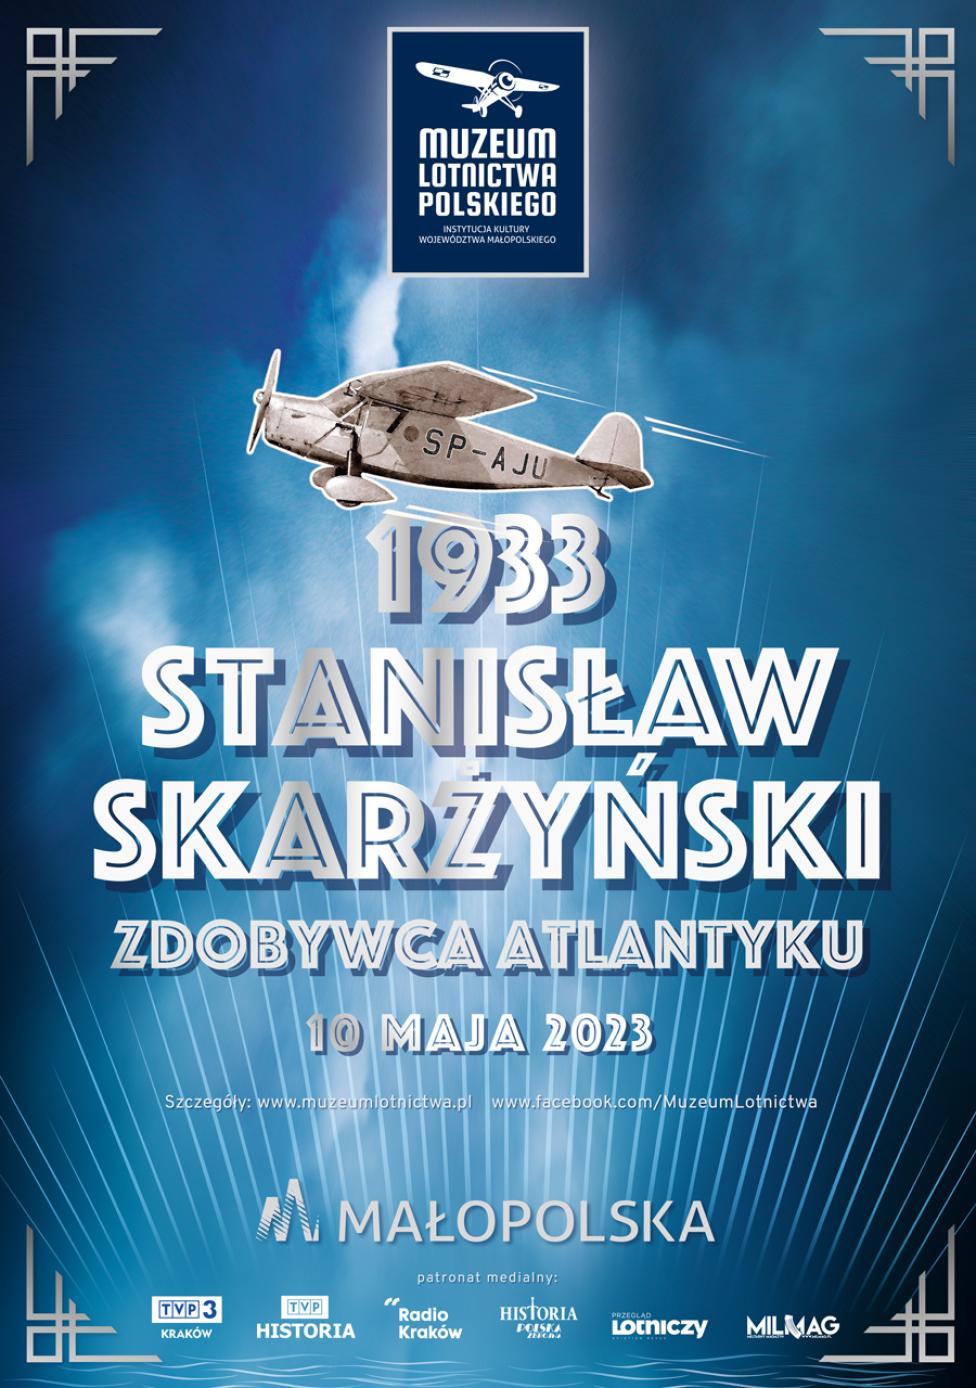 1933 - Stanisław Skarżyński, zdobywca Atlantyku (fot. Muzeum Lotnictwa Polskiego)